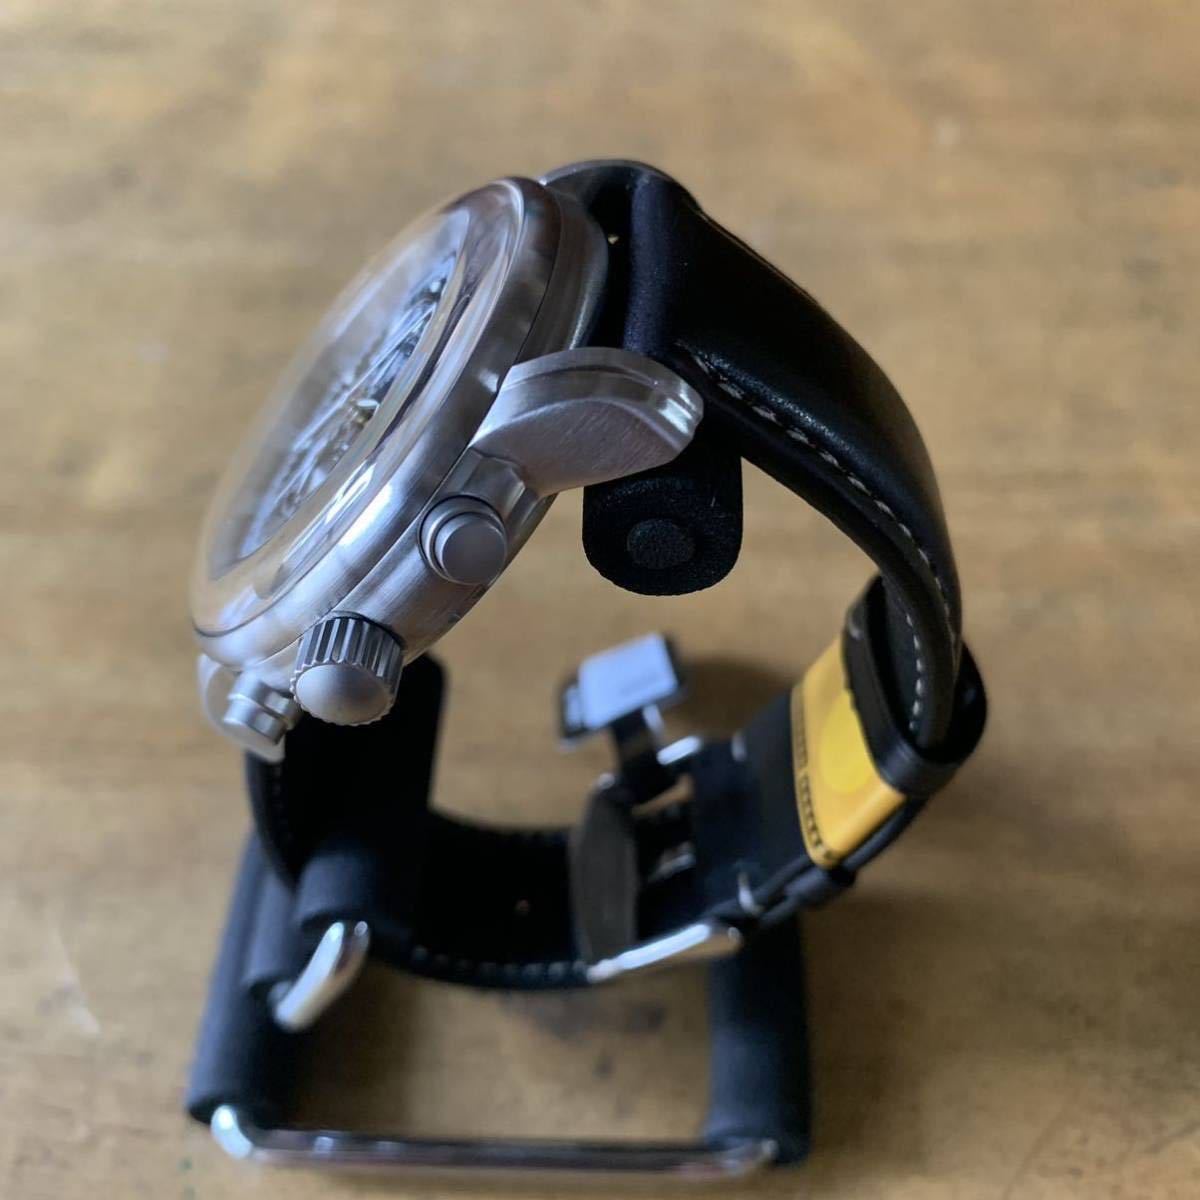 ツェッペリン ZEPPELIN 100周年記念モデル クロノグラフ 腕時計 7680-2 クロコ型押しカーフベルト ブラック ブラック_画像5